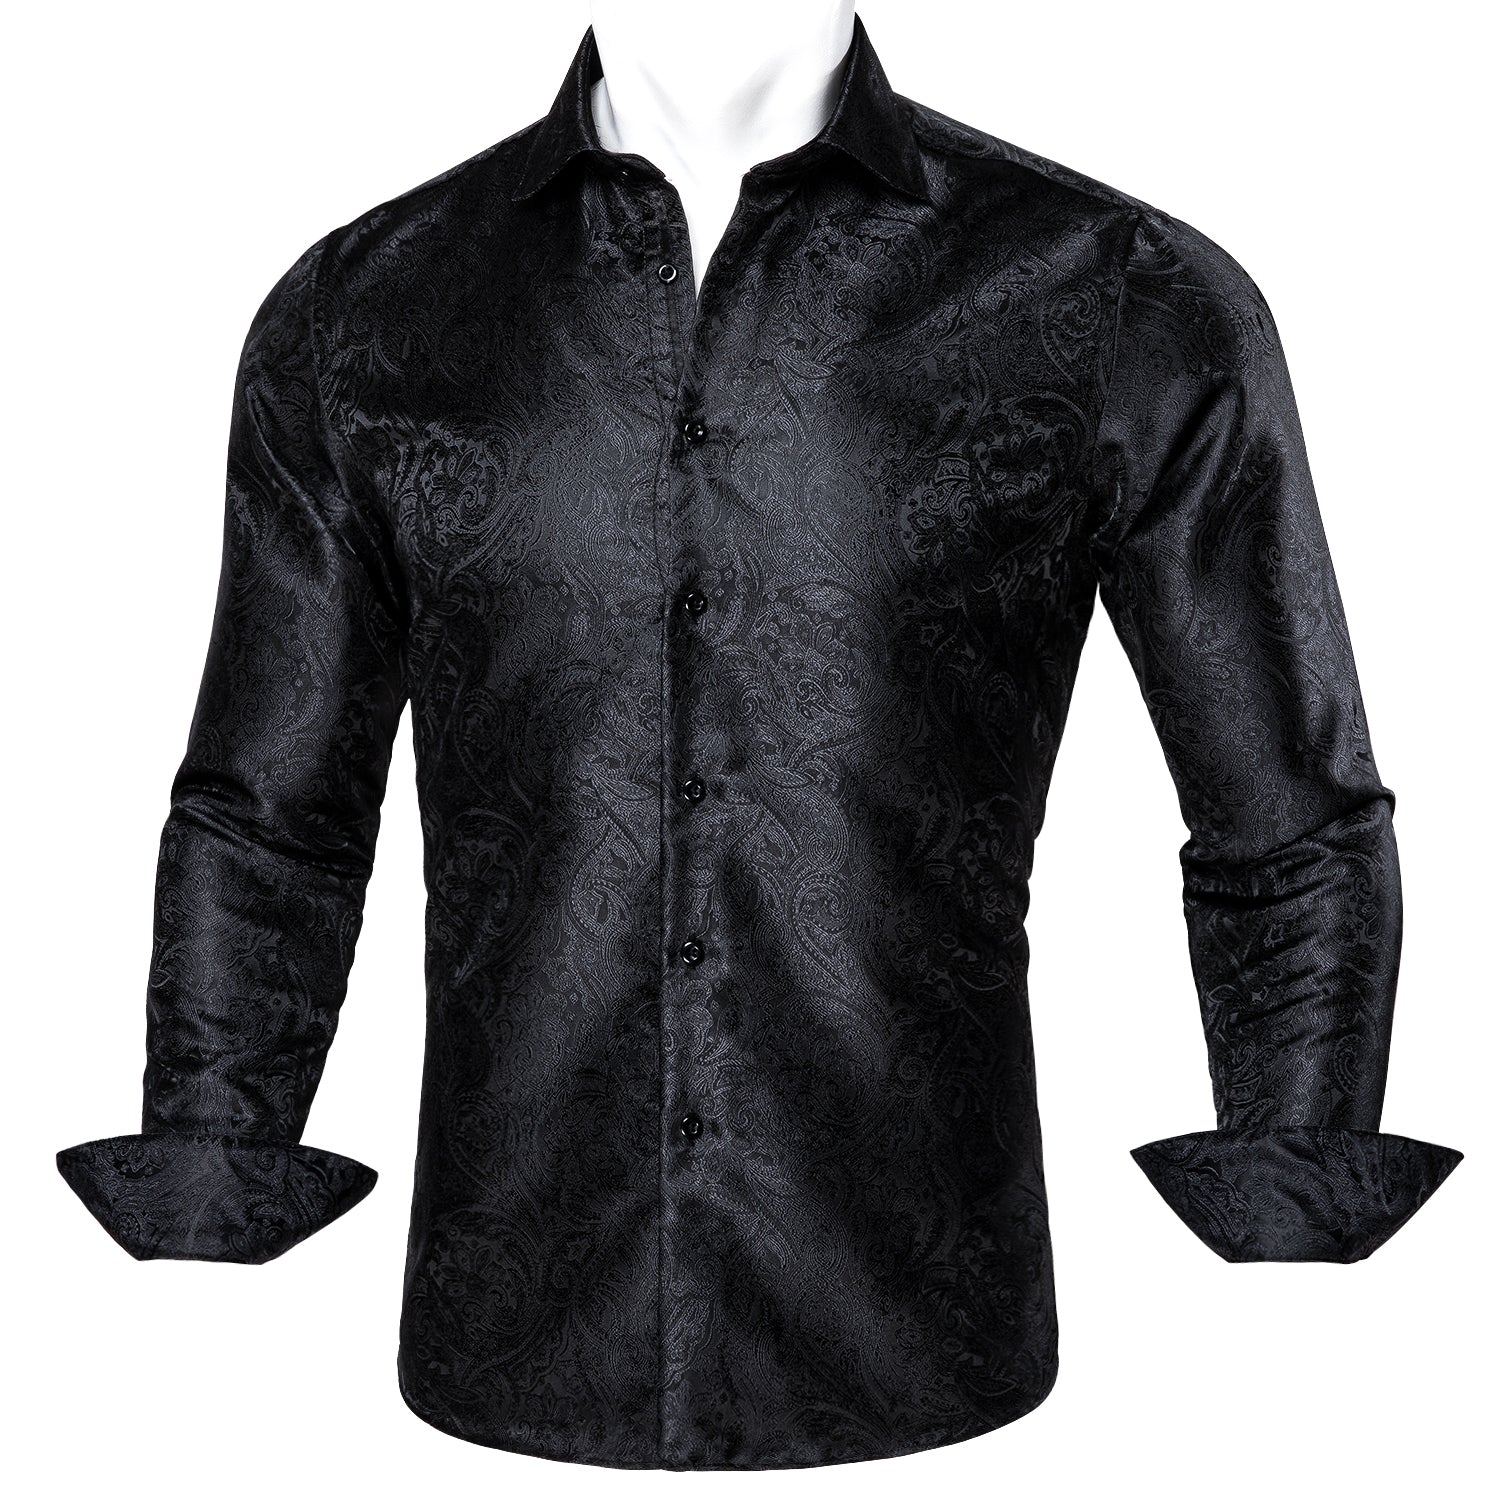 Barry.wang Black Floral Silk Men's Shirt